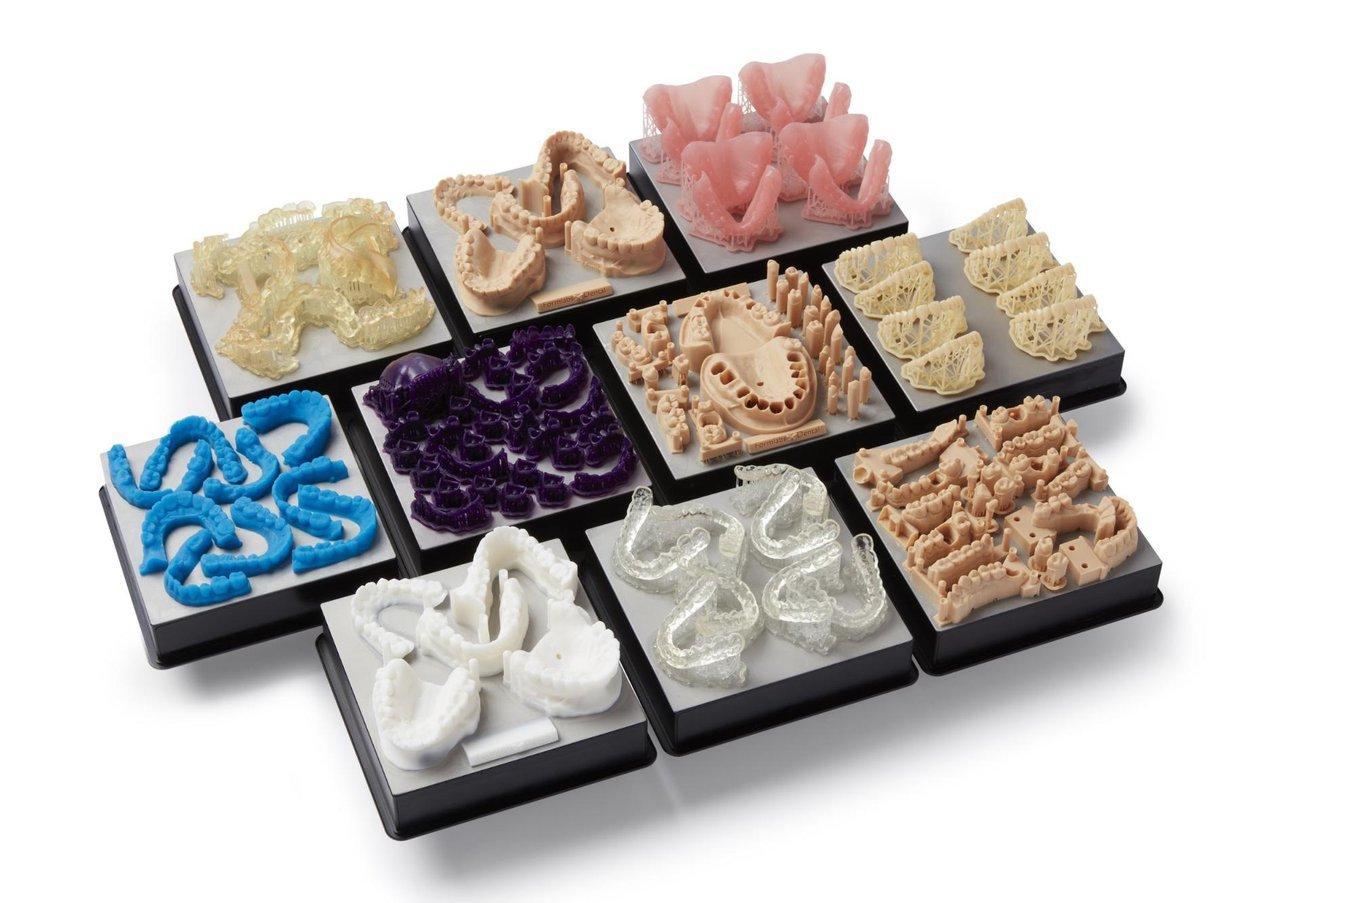 Las impresoras 3D para odontología permiten producir digitalmente una gran variedad de productos dentales personalizados a bajo coste.